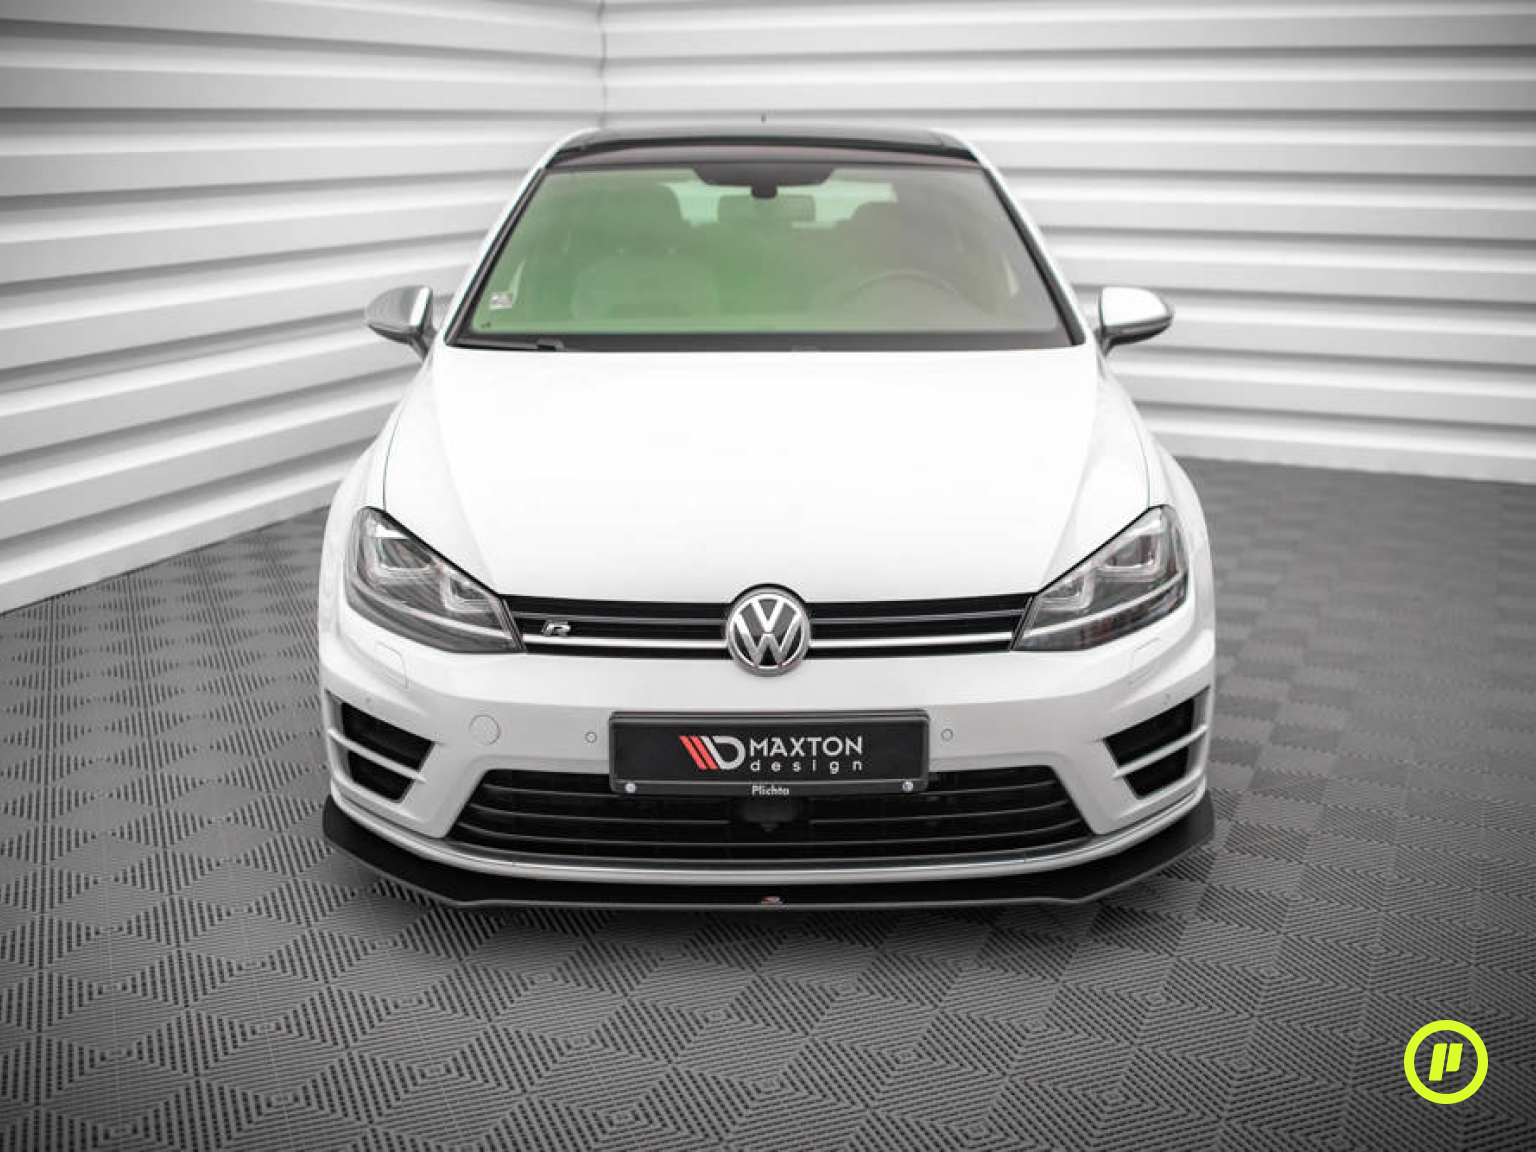 Maxton Design - Street Pro Frontsplitter v1 für Volkswagen Golf 7 R (Mk7 2013-2016)